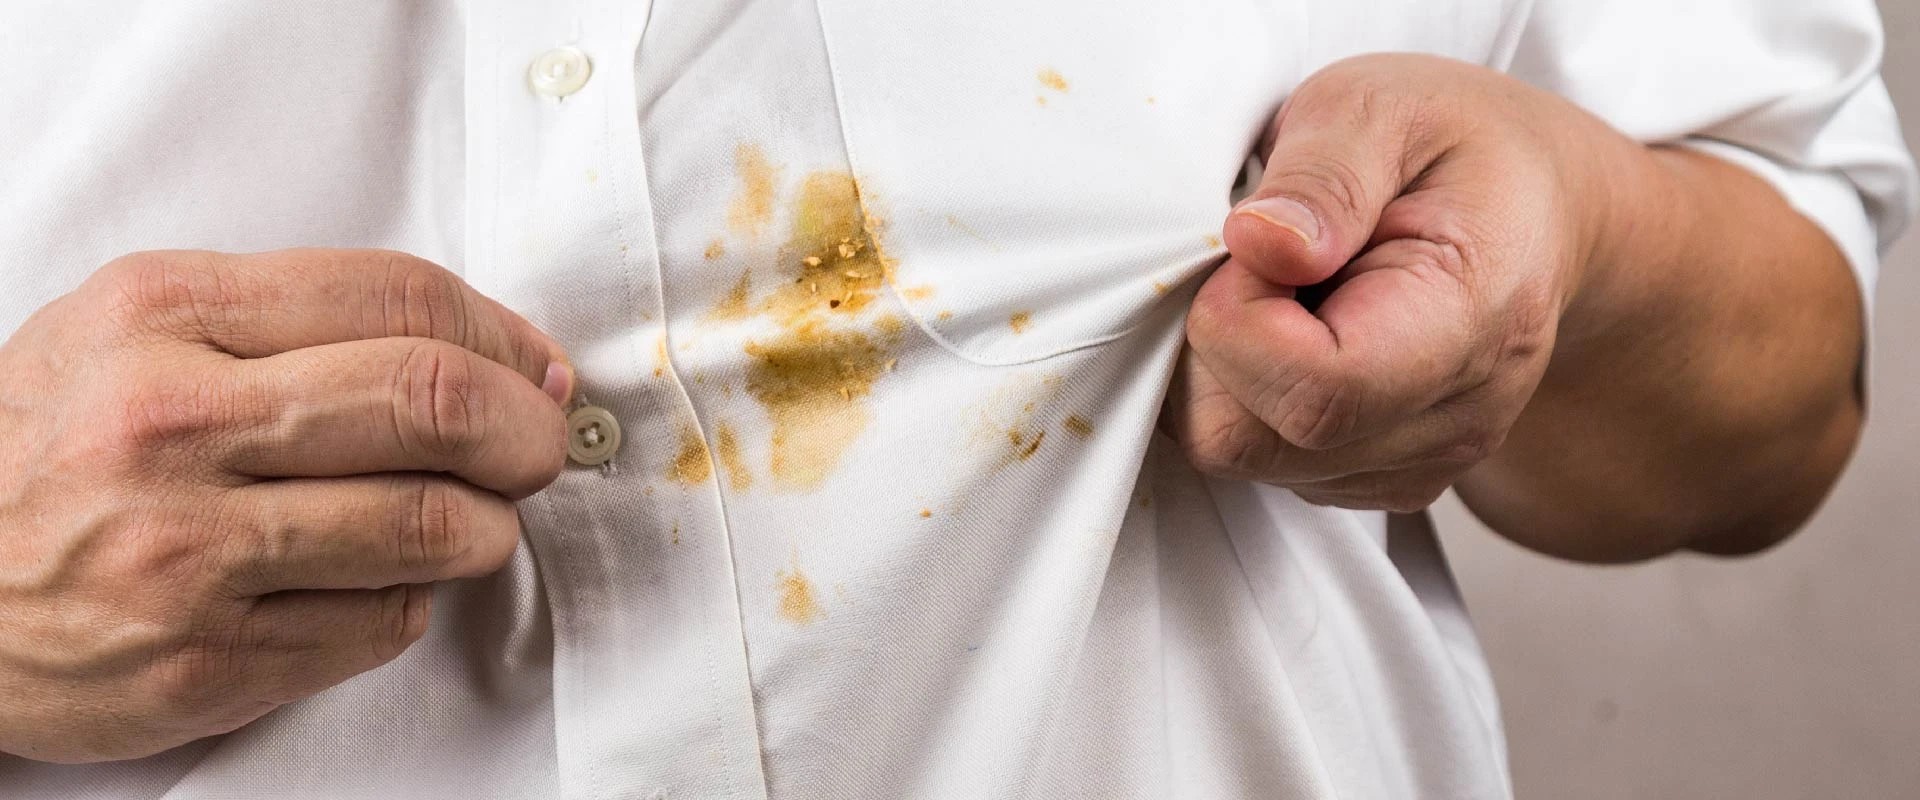 Как удалить пятна жира и масла с одежды и тканей